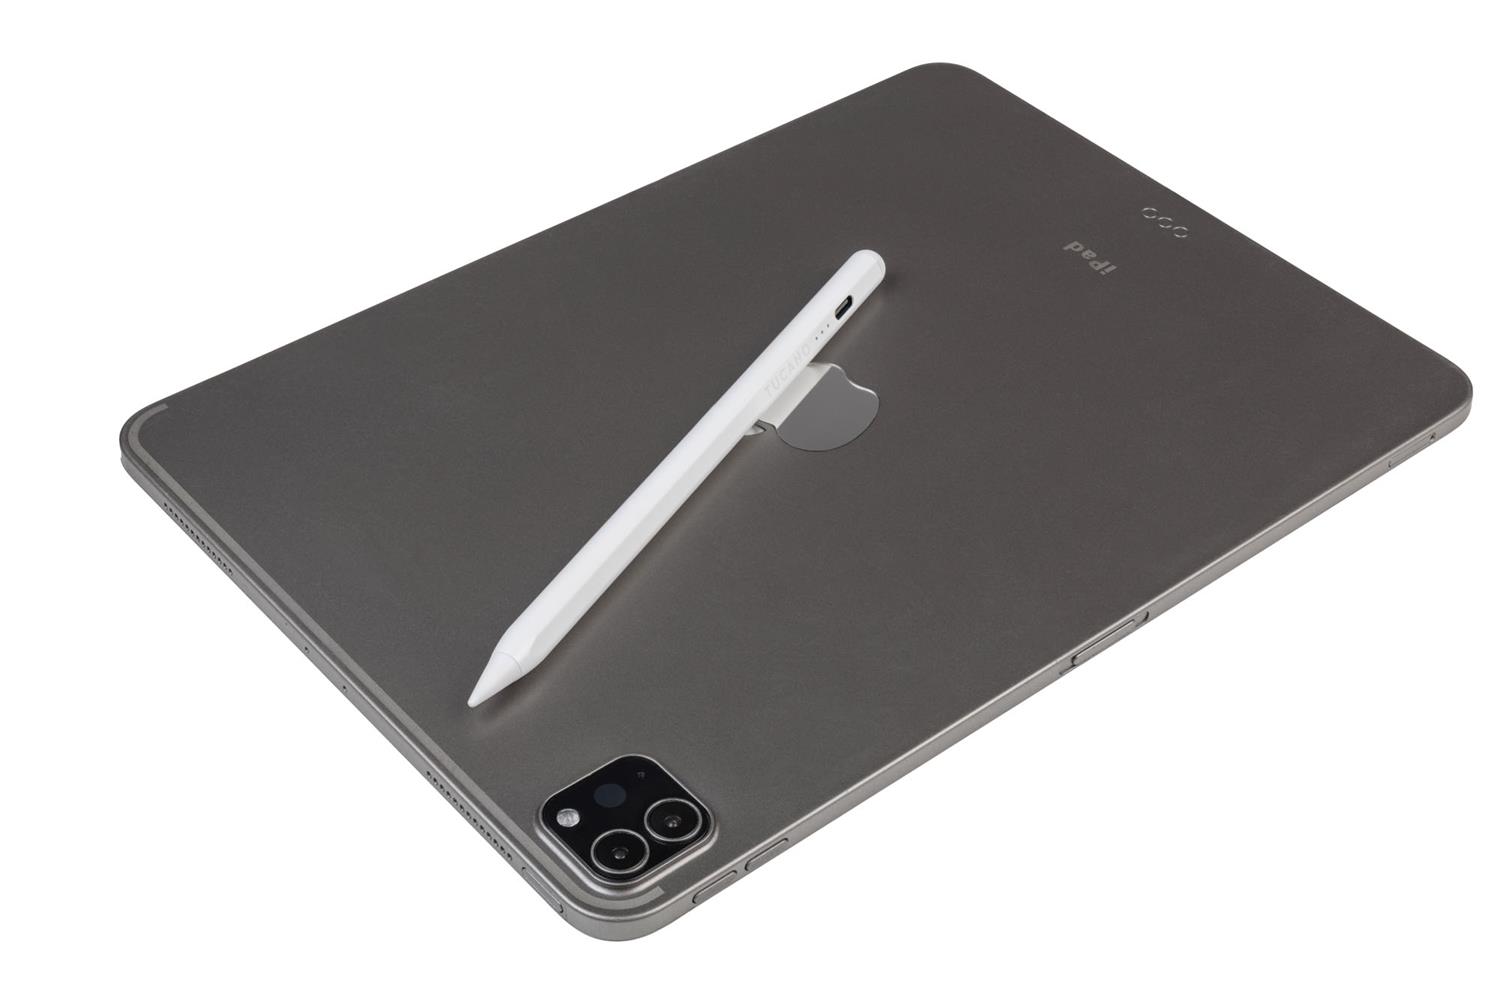 Tucano Active Stylus Pen USB-C, für iPad, mit Handballenerkennung, weiss